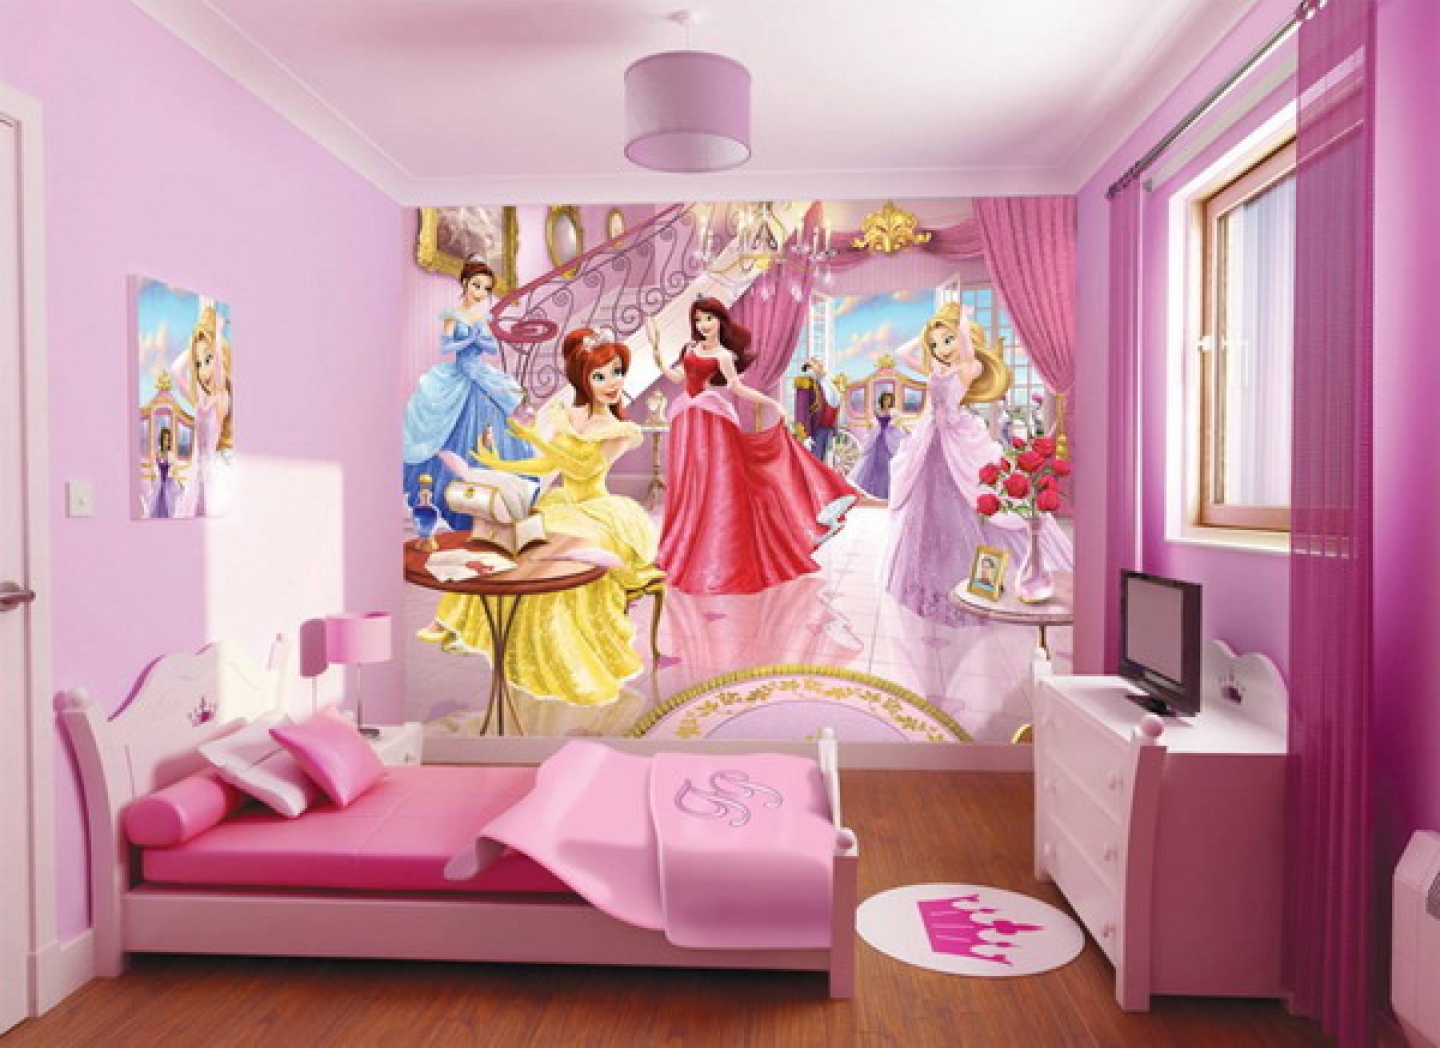 Обои для девочки 7 лет. Комната для девочки принцессы Диснея. Комната в стиле принцессы Диснея. Детские спальни для девочек. Интерьер детской комнаты девочке.